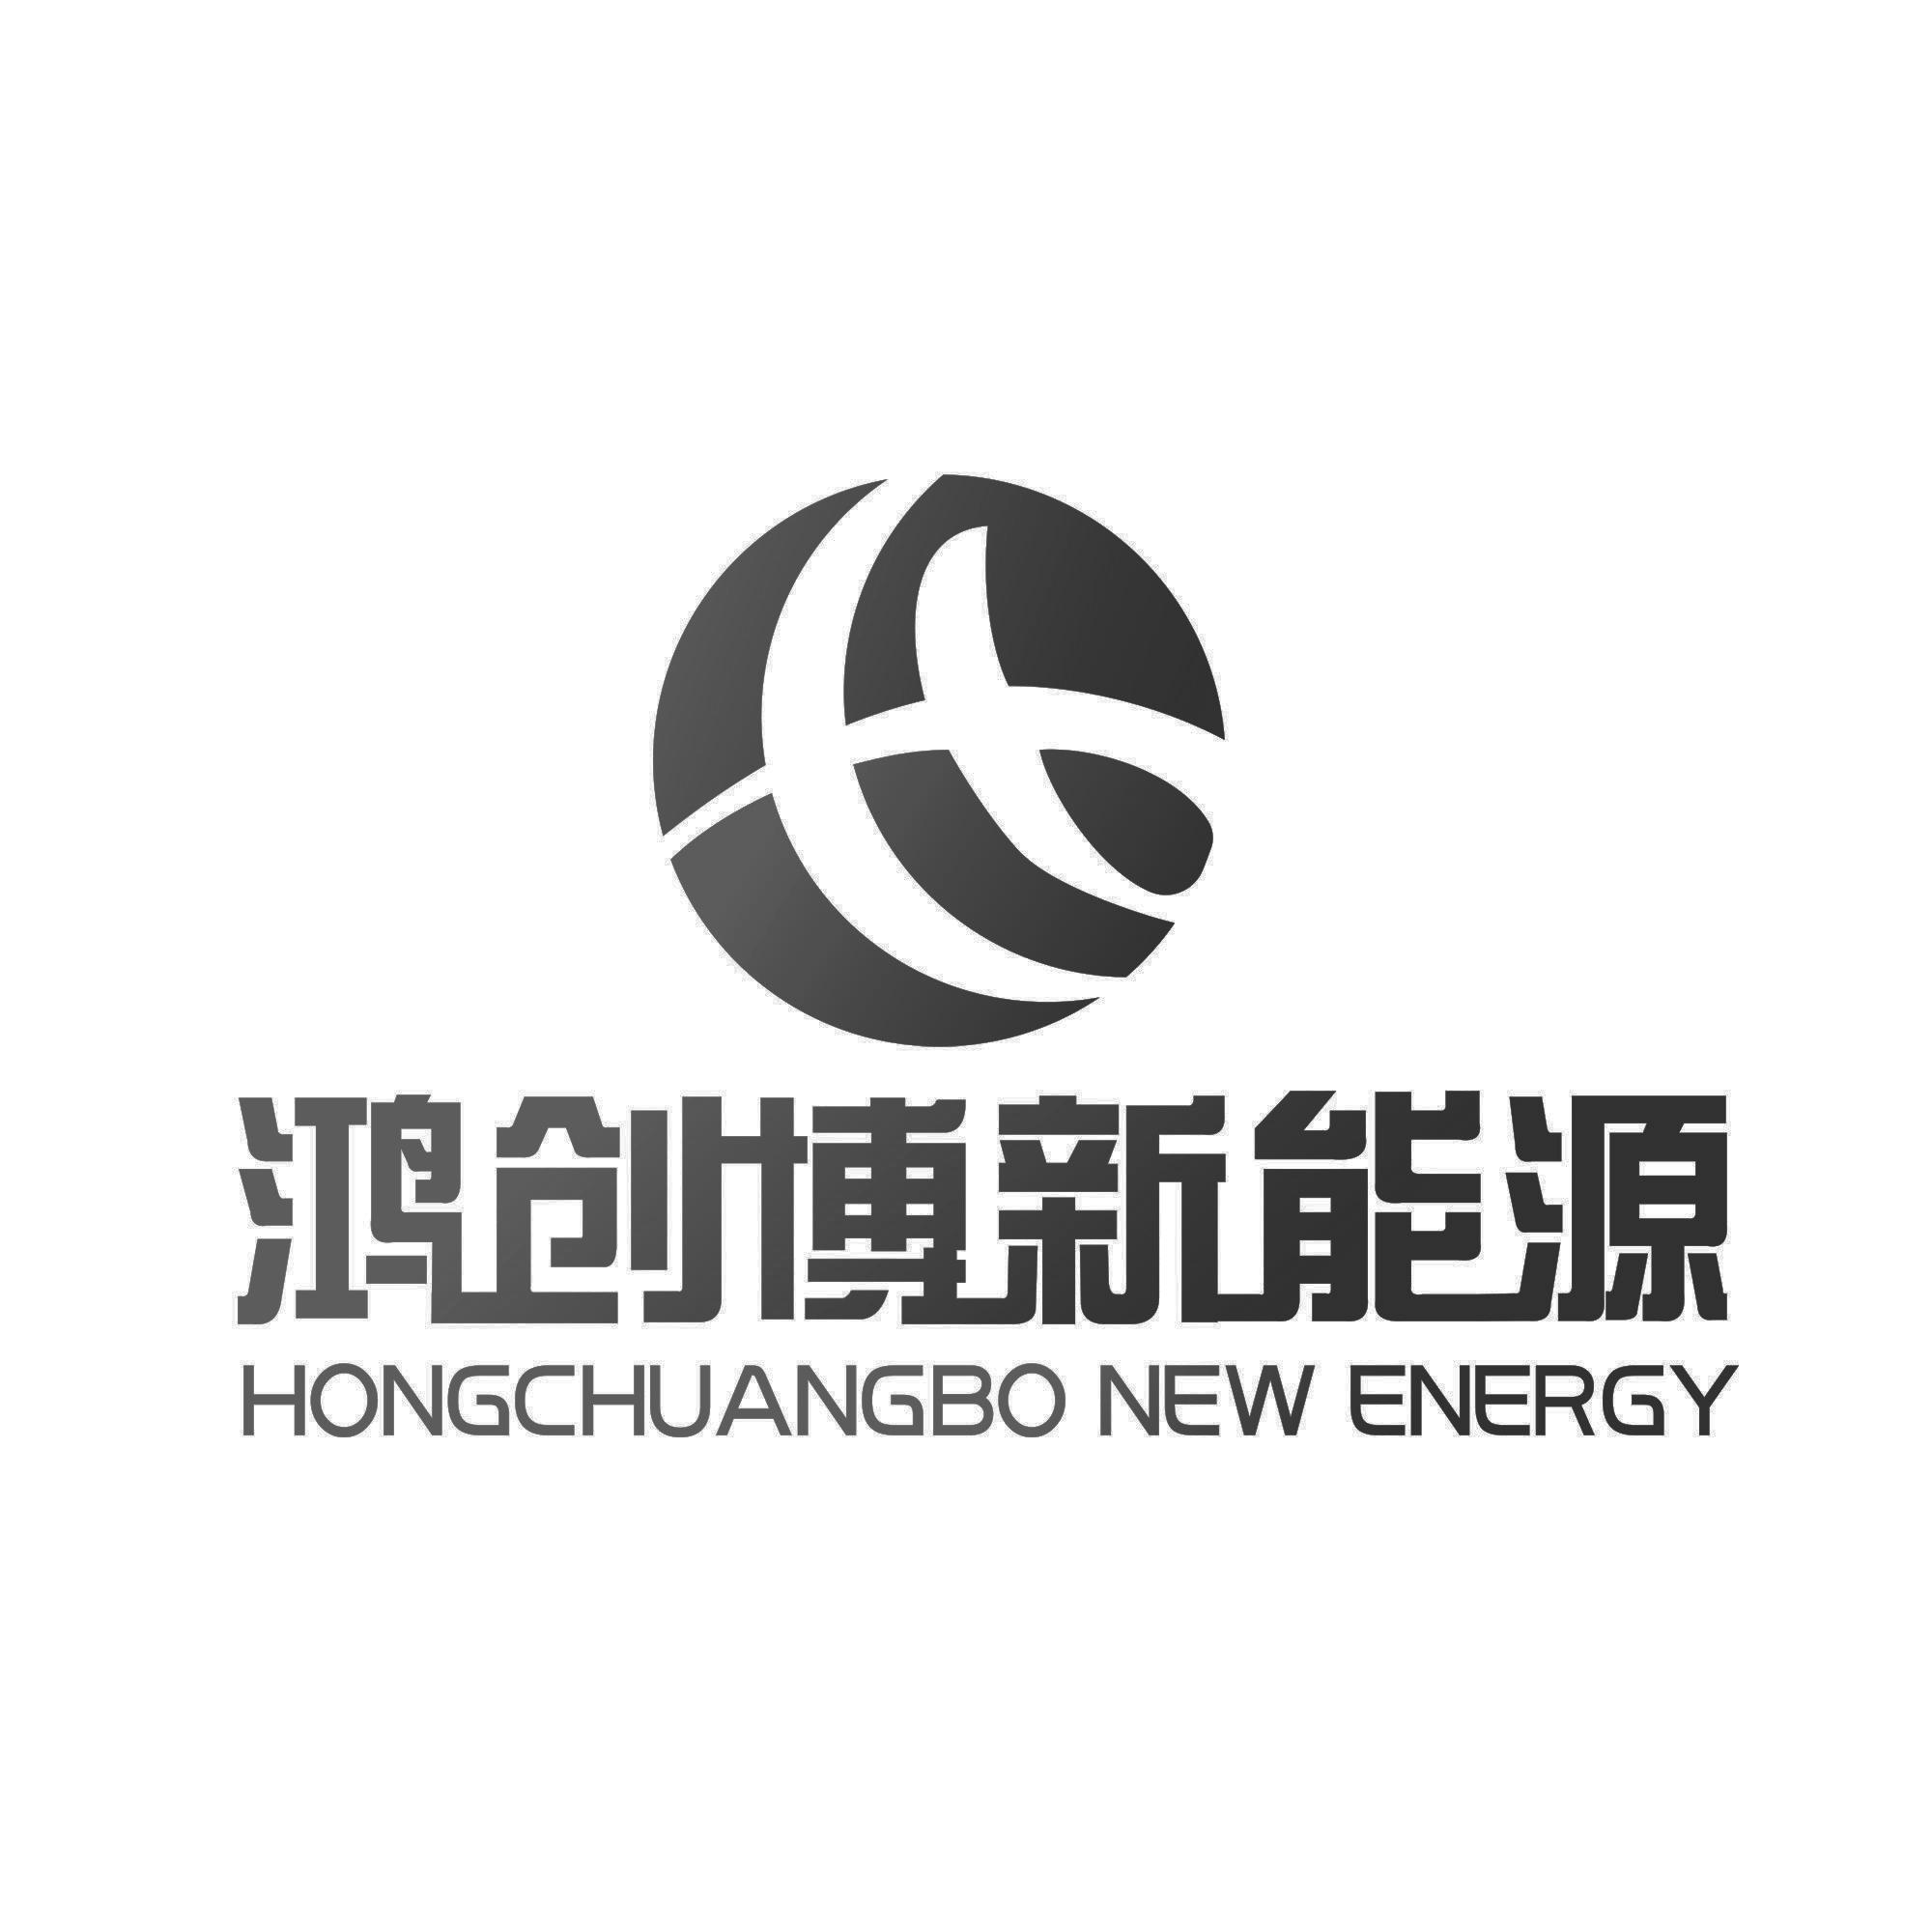 鸿创博新能源 hongchuangbo new energy 商标公告